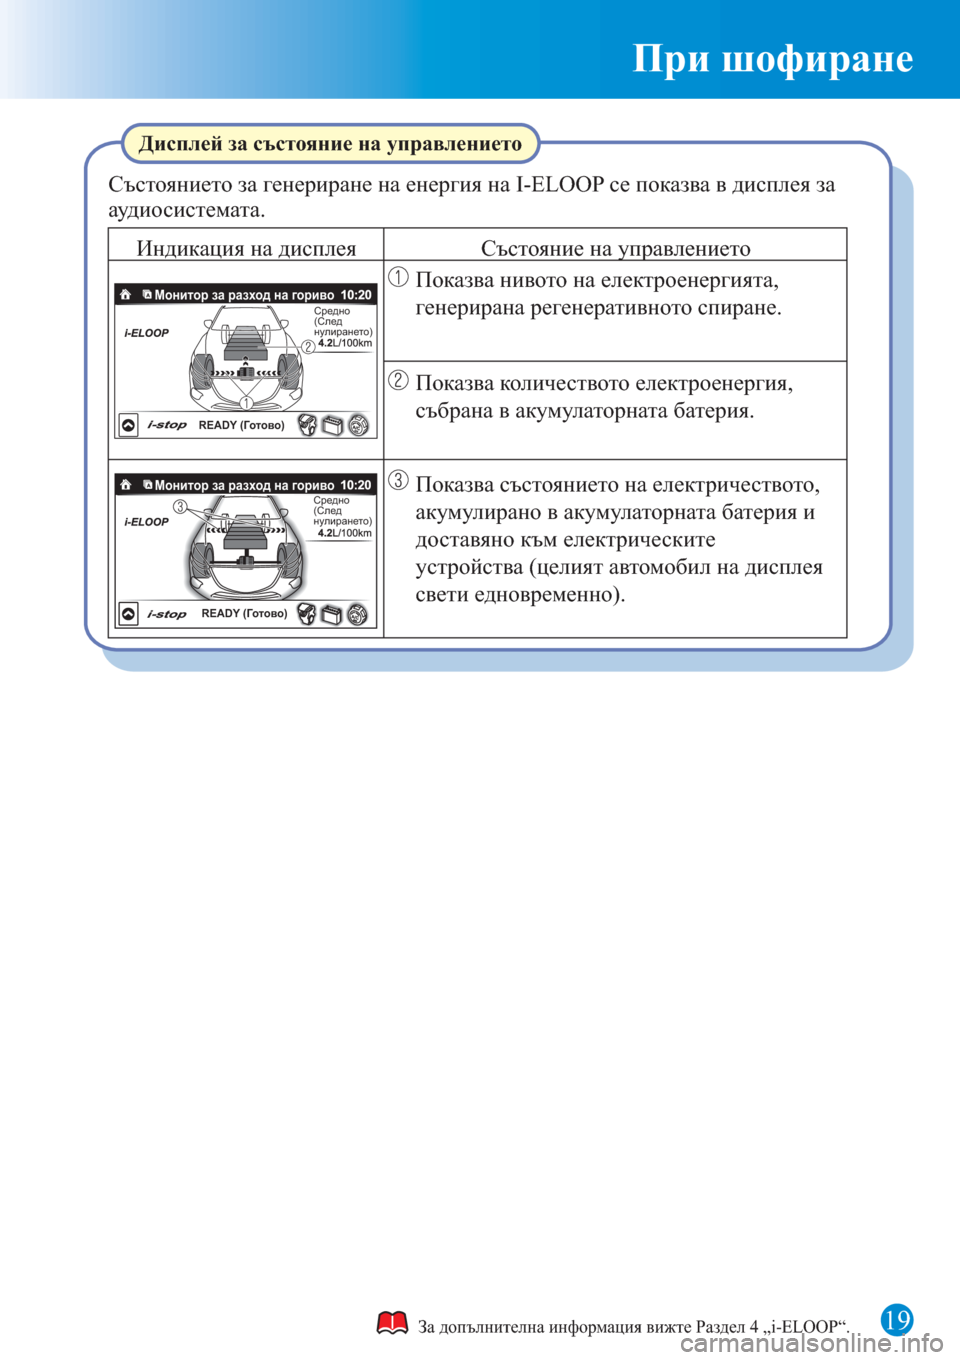 MAZDA MODEL 3 HATCHBACK 2015  Бързо ръководство (in Bulgarian) 19
При шофиране
За допълнителна информация вижте Раздел 4 „i-ELOOP“.
Състоянието за генериране на енергия на I-ELOOP